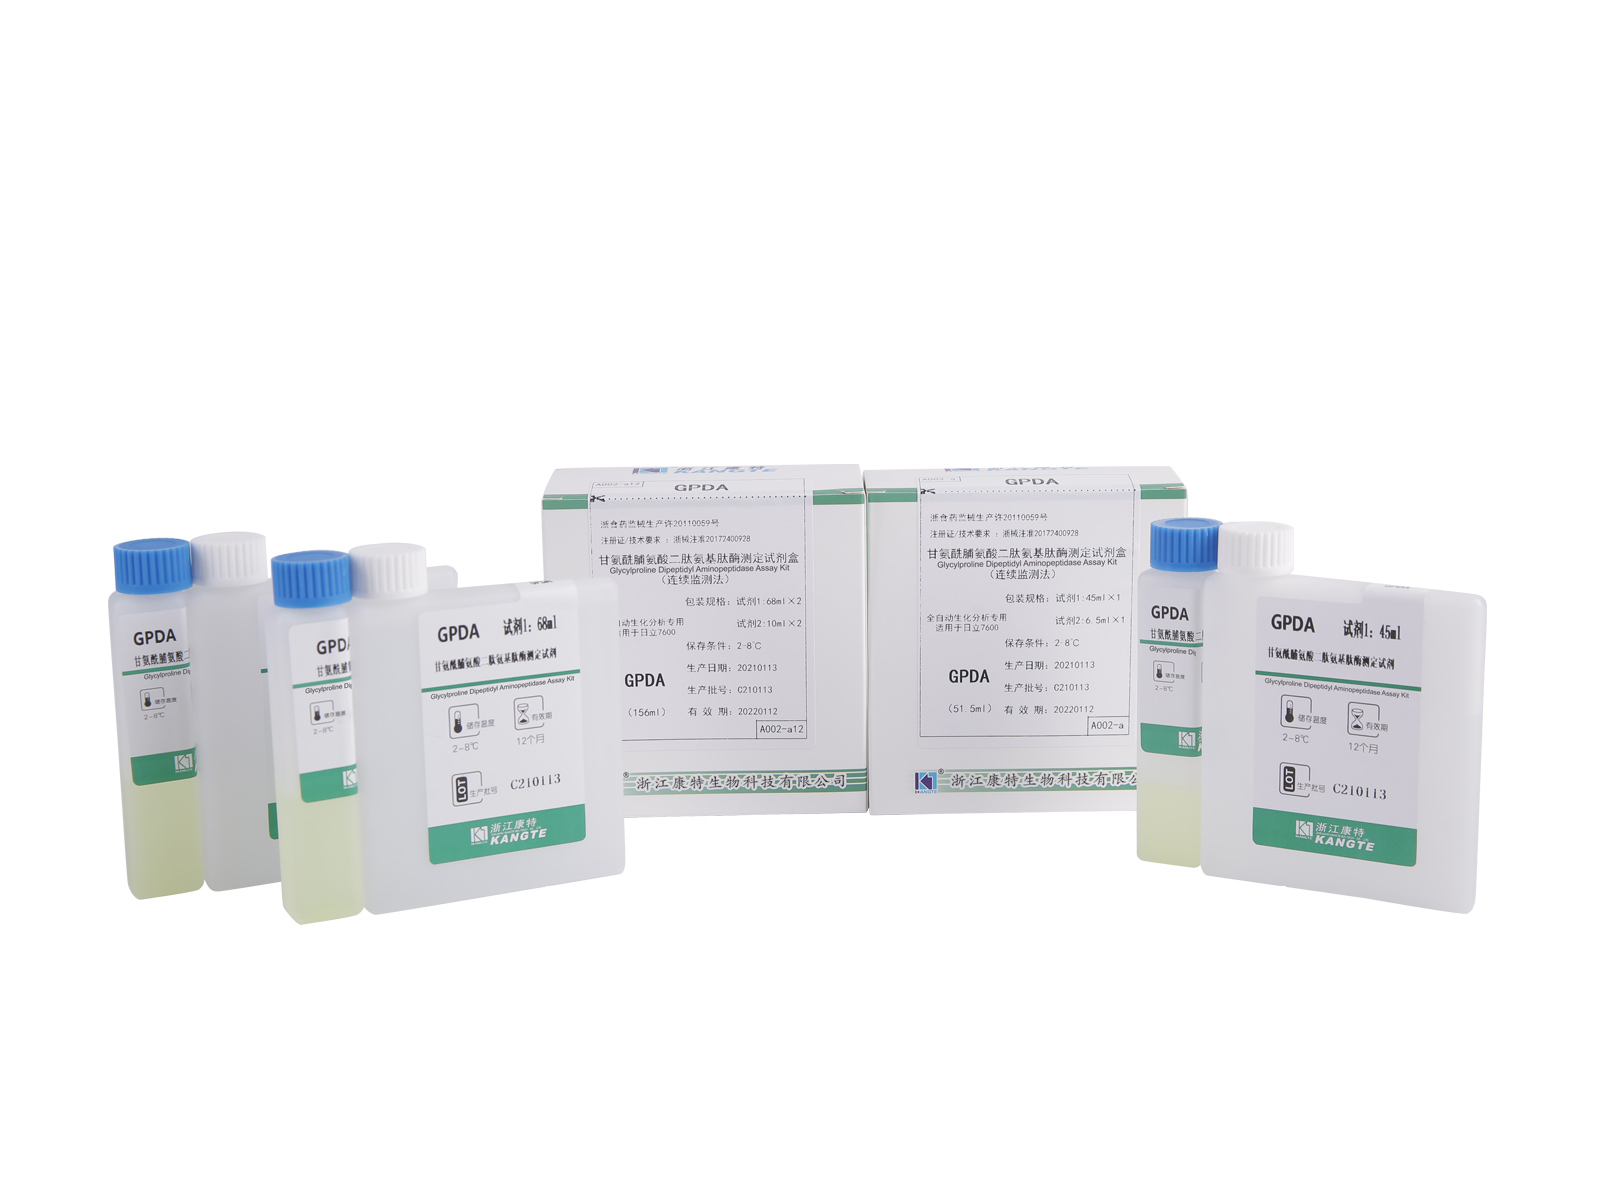 【GPDA】Glycylproline Dipeptidyl Aminopeptidase Assay Kit (Kaedah Pemantauan Berterusan)